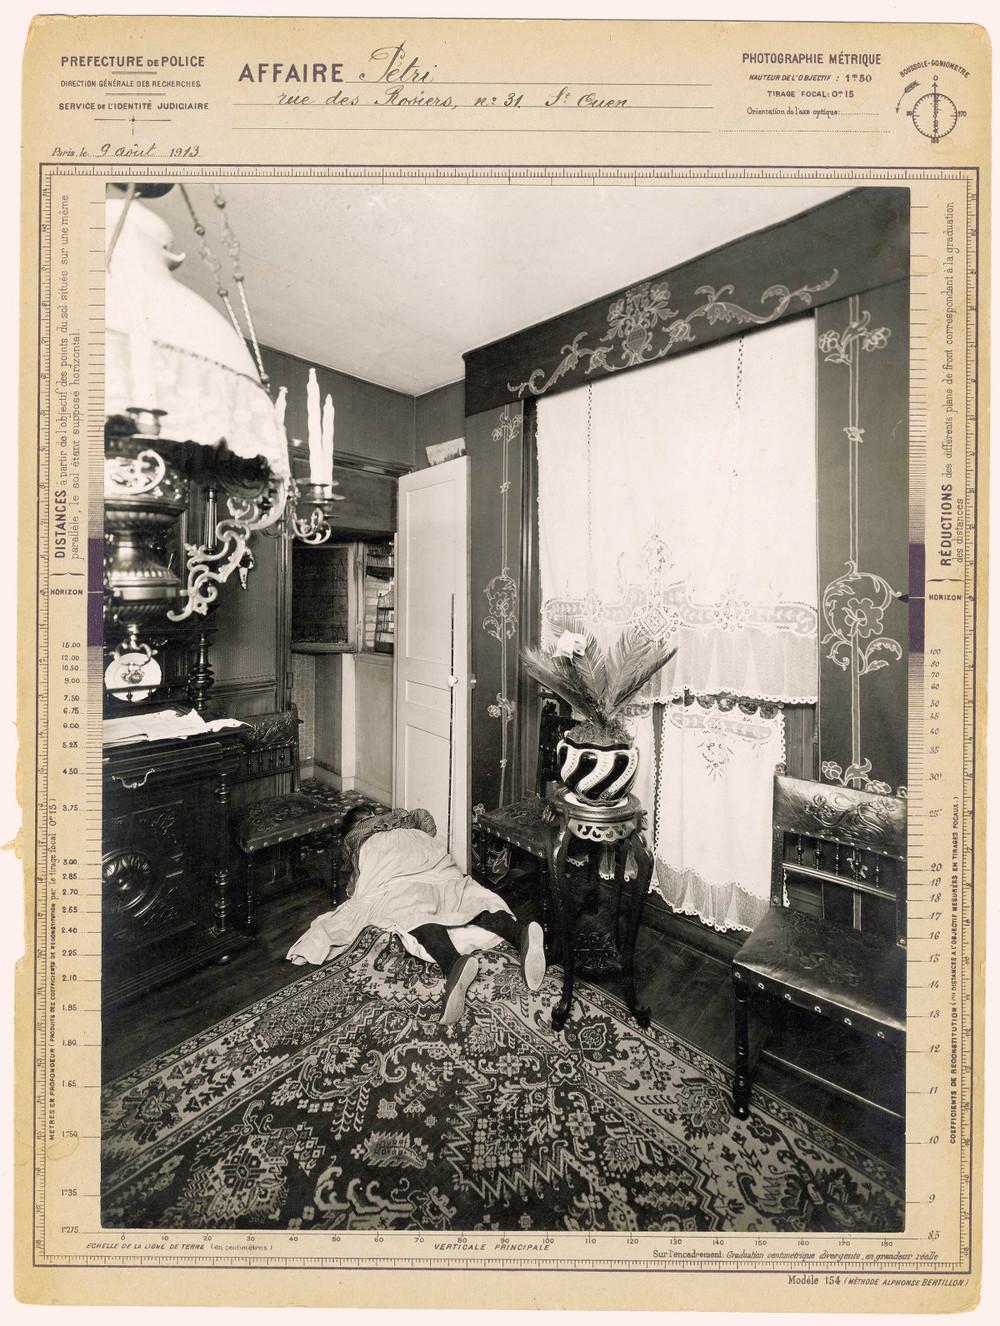 Το πτώμα της ηλικιωμένης κυρίας βρέθηκε στις 9 Αυγούστου του 1913 στην οδό Rosiers στο Παρίσι. Ο δράστης δεν βρέθηκε ποτέ.